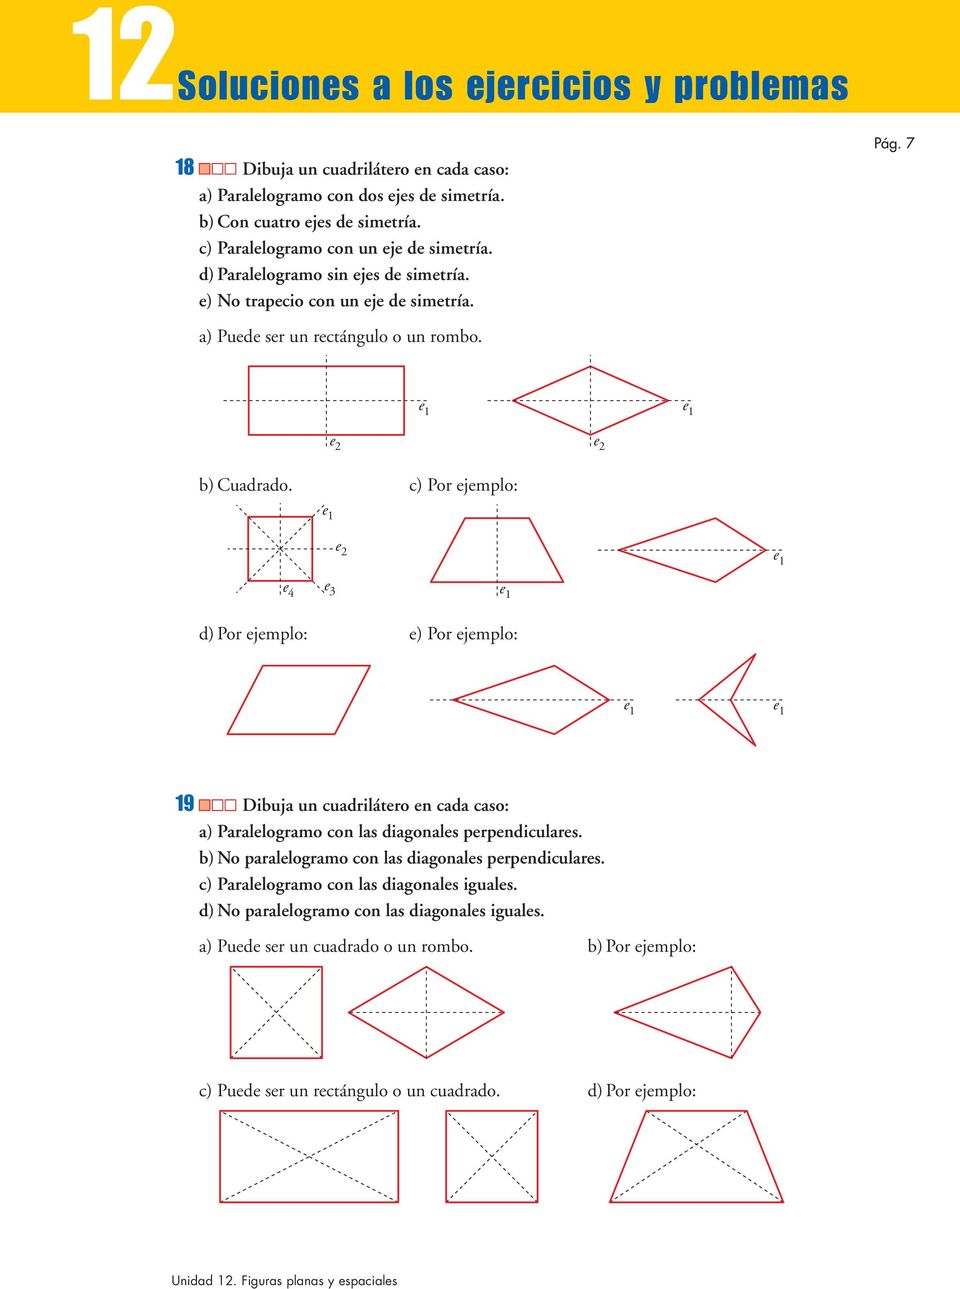 c) Por ejemplo: e 1 e 2 e 1 e 4 e 3 e 1 d) Por ejemplo: e) Por ejemplo: e 1 e 1 19 Dibuja un cuadrilátero en cada caso: a) Paralelogramo con las diagonales perpendiculares.